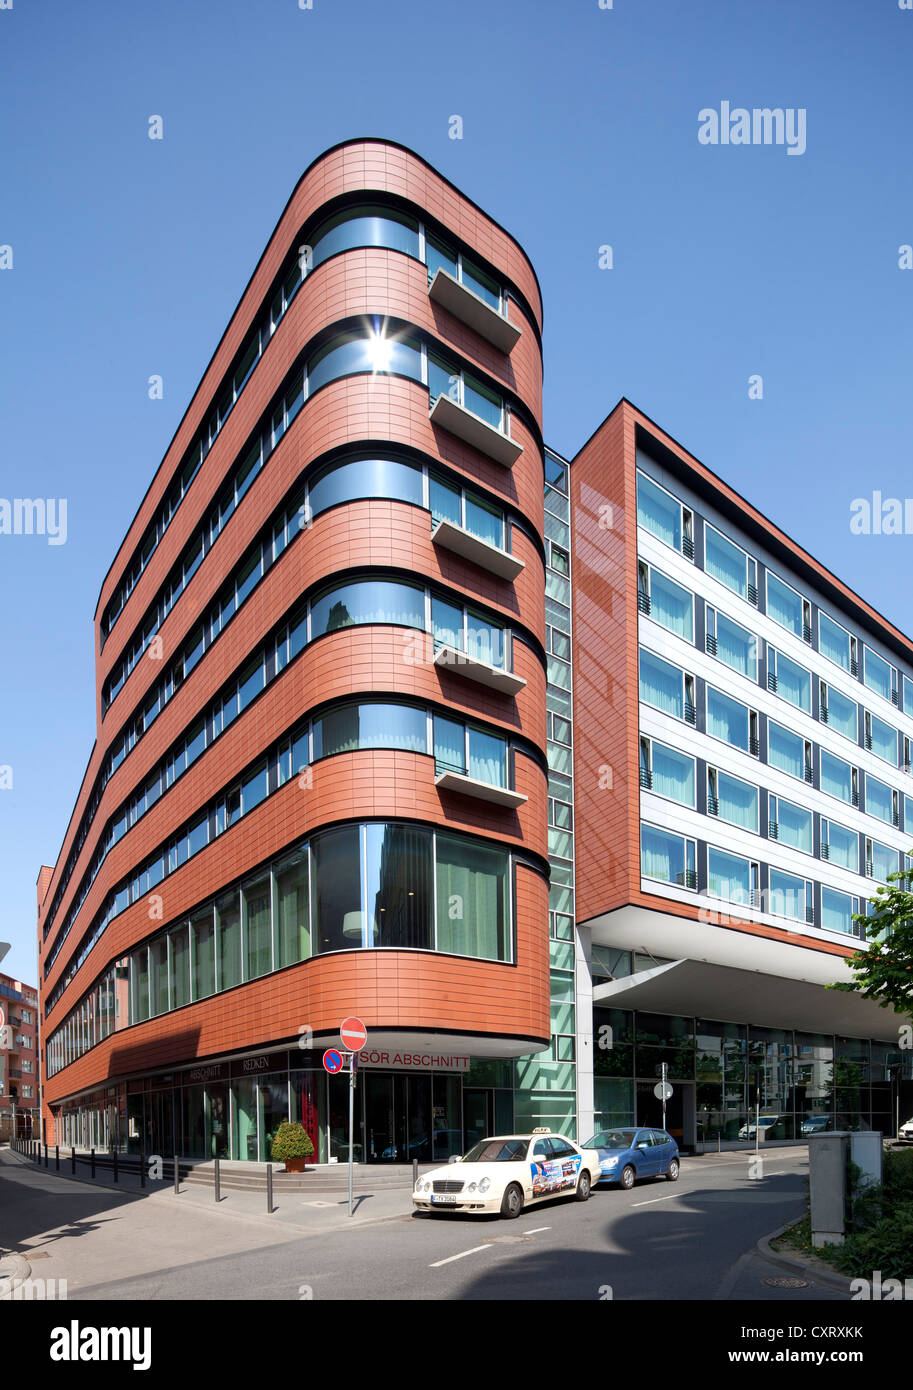 Hôtel NH et immeuble de bureaux, Frankfurt am Main, Hesse, Germany, Europe, PublicGround Banque D'Images